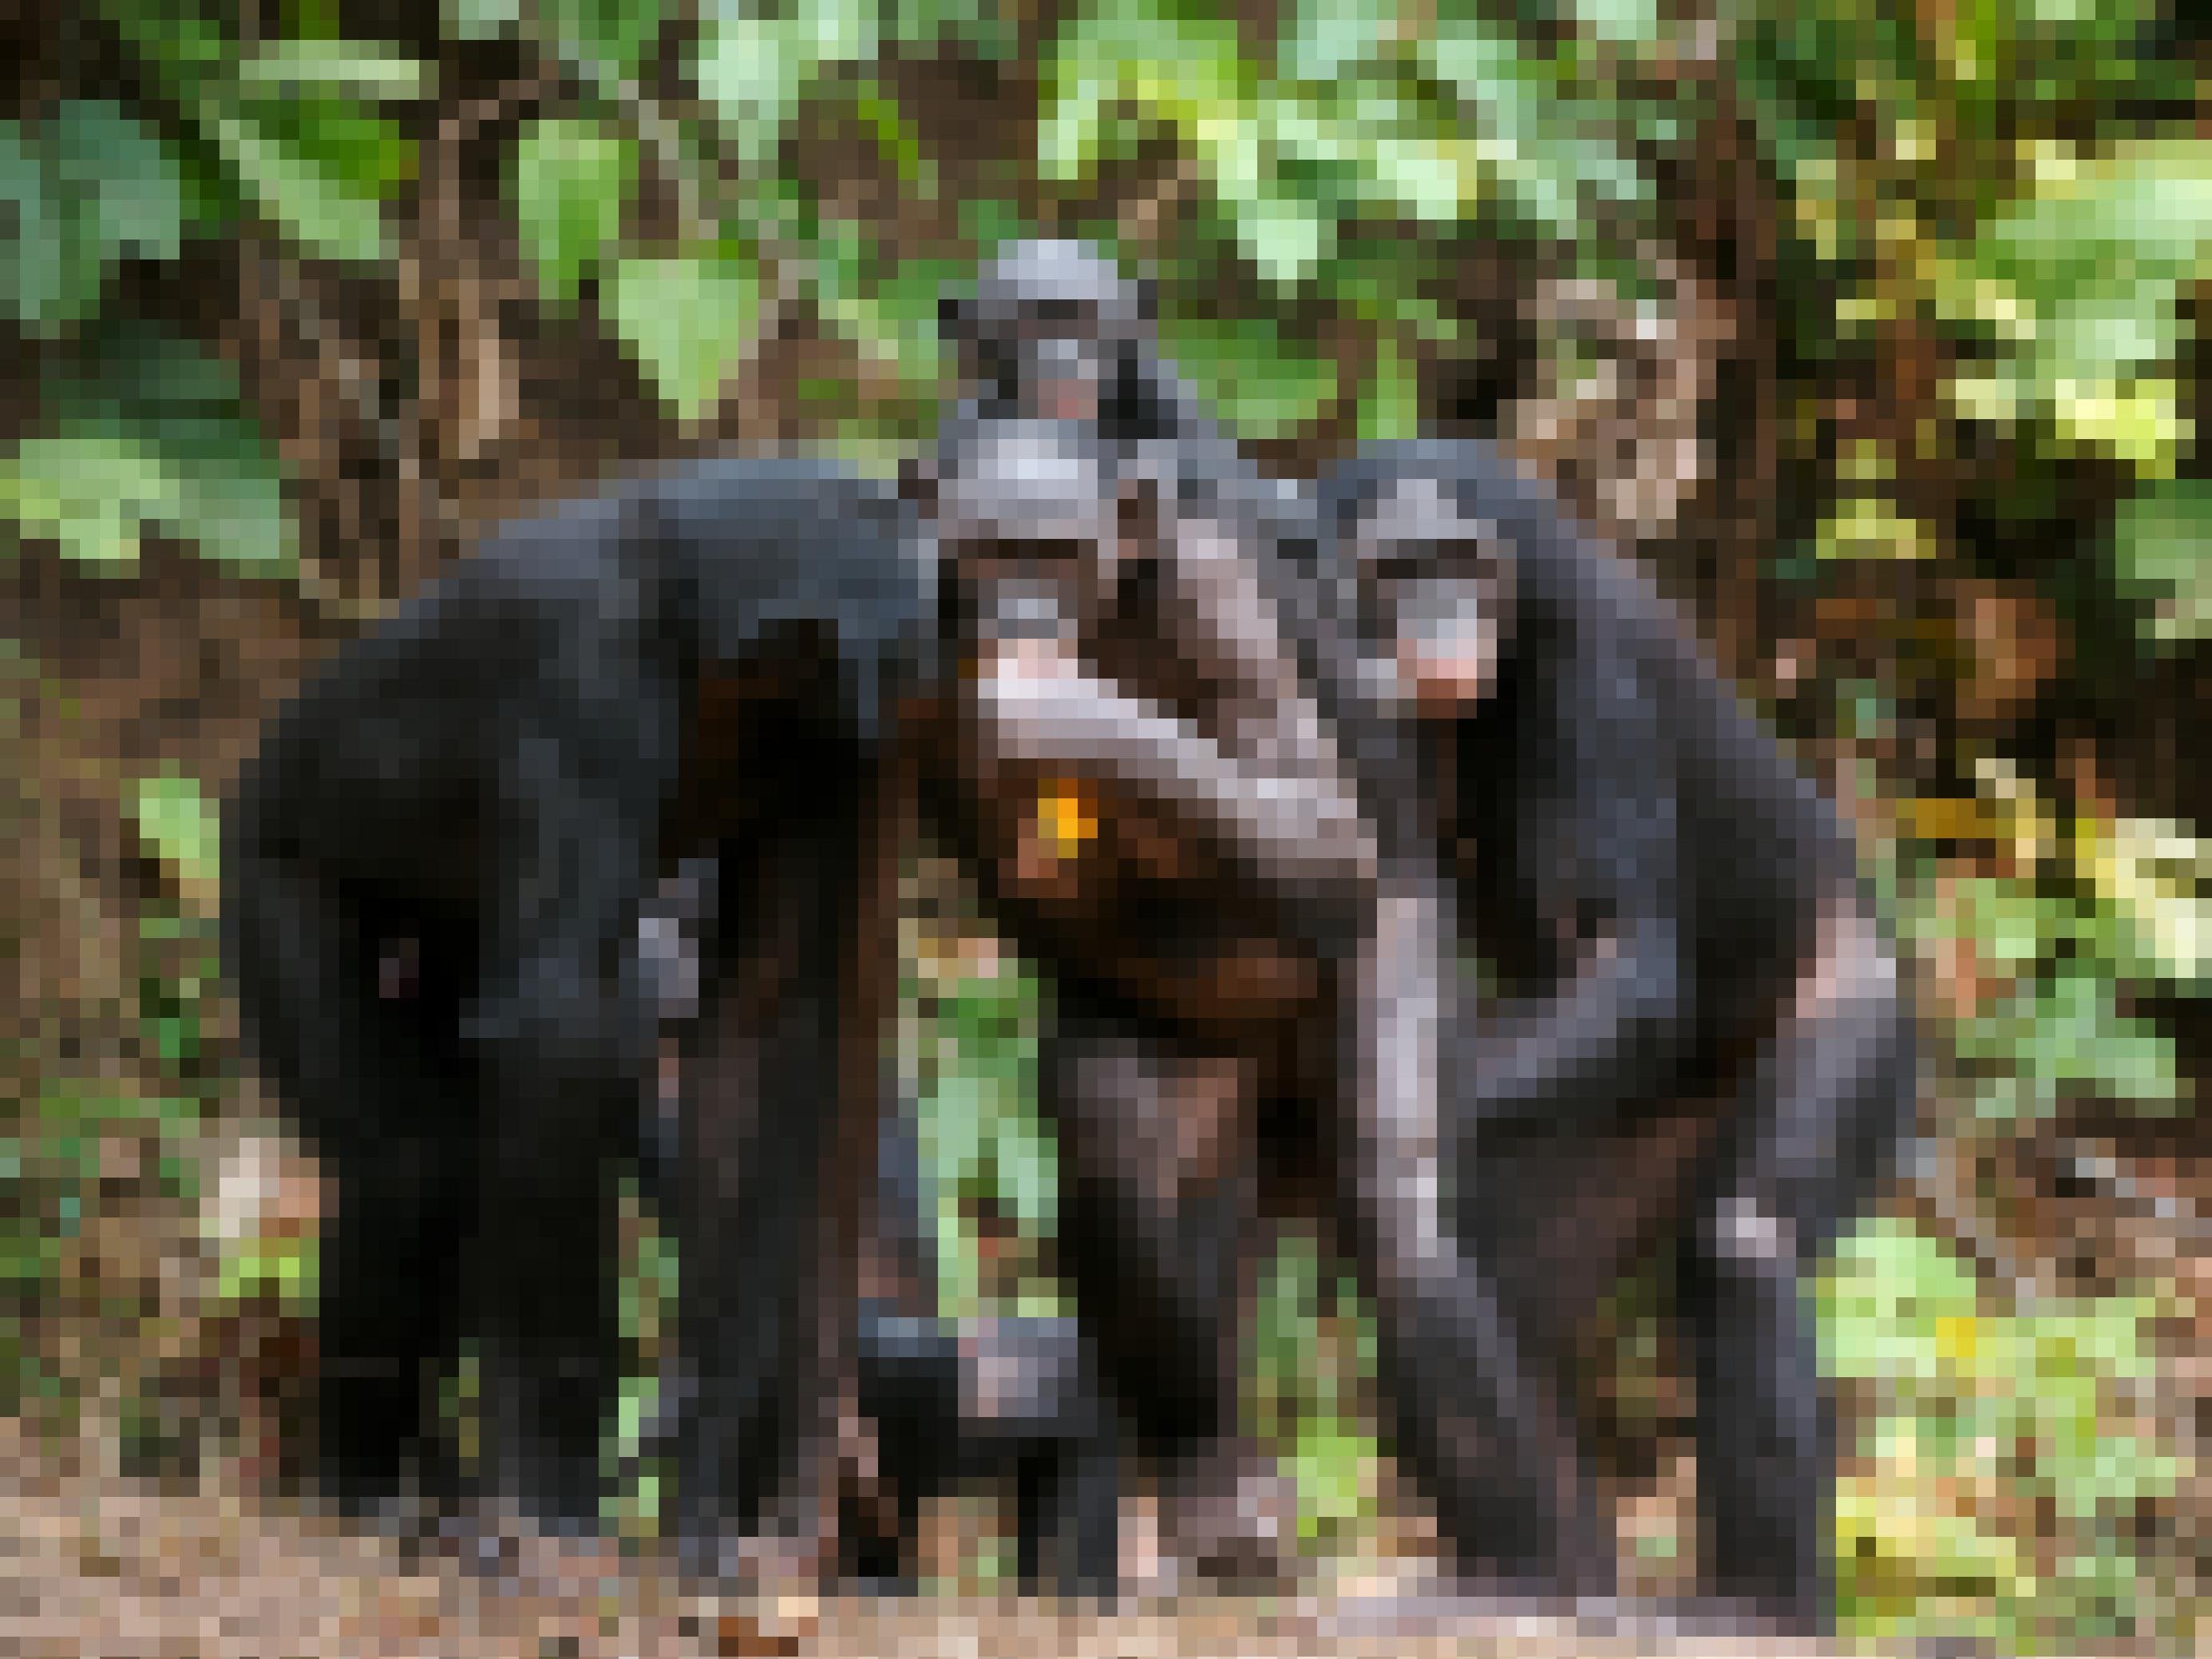 Auf dem Bild zu sehen ist eine Gruppe Bonobos in halb aufrechter Haltung, aufgenommen im Dschungel in der Republik Kongo. Ein Weibchen trägt ein Jungtier auf dem Rücken und hält Futter in der Hand. Möglicherweise, so eine These, entstand der aufrechte Gang einst, weil Menschenaffen so besser Kinder transportieren oder Nahrung für andere herbeischaffen konnten.